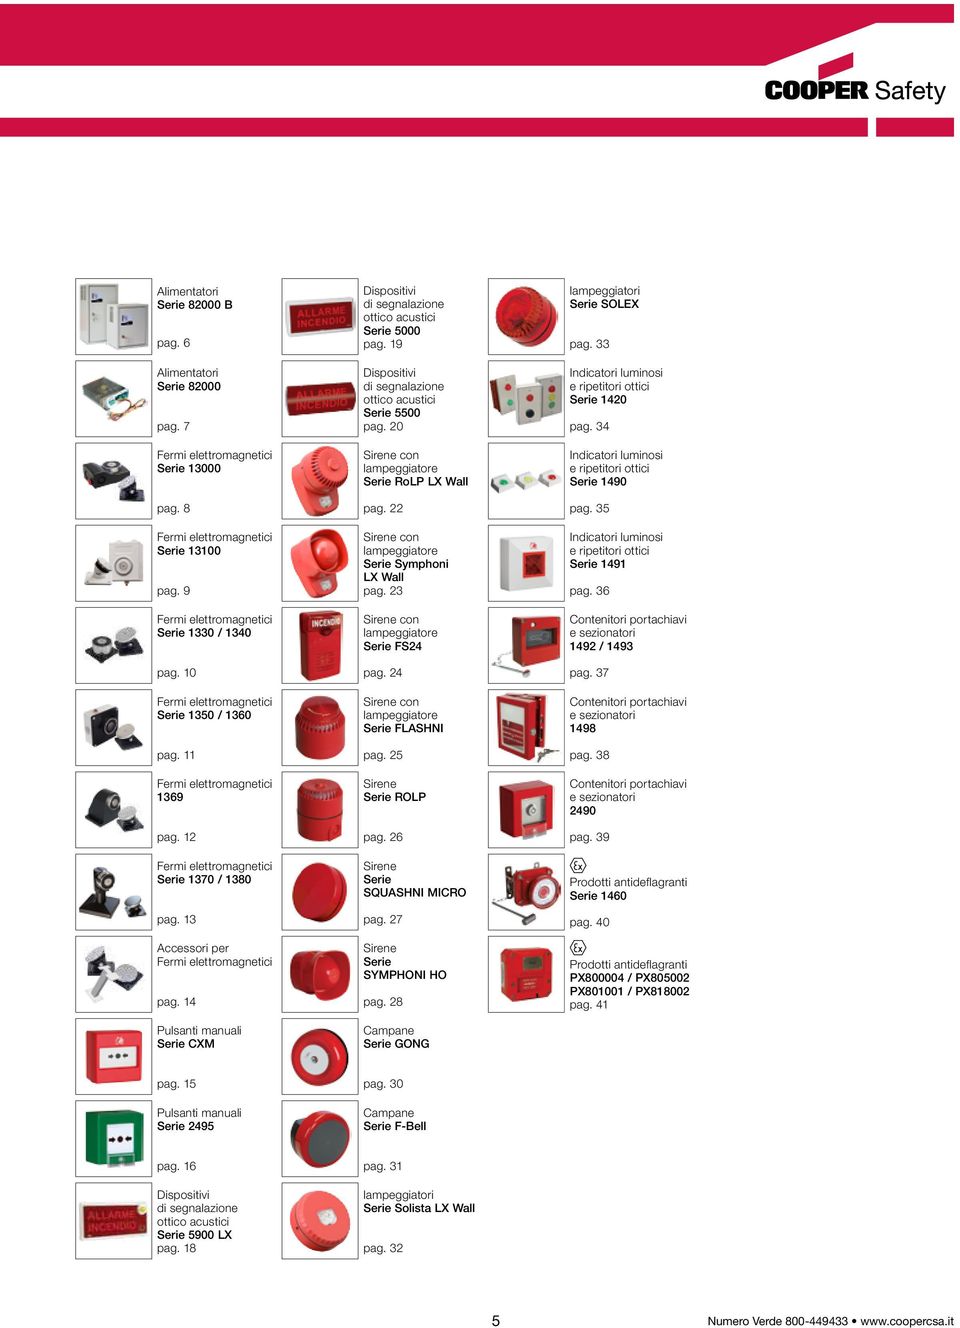 14 Pulsanti manuali Serie CXM Dispositivi di segnalazione ottico acustici Serie 5000 pag. 19 Dispositivi di segnalazione ottico acustici Serie 5500 pag.